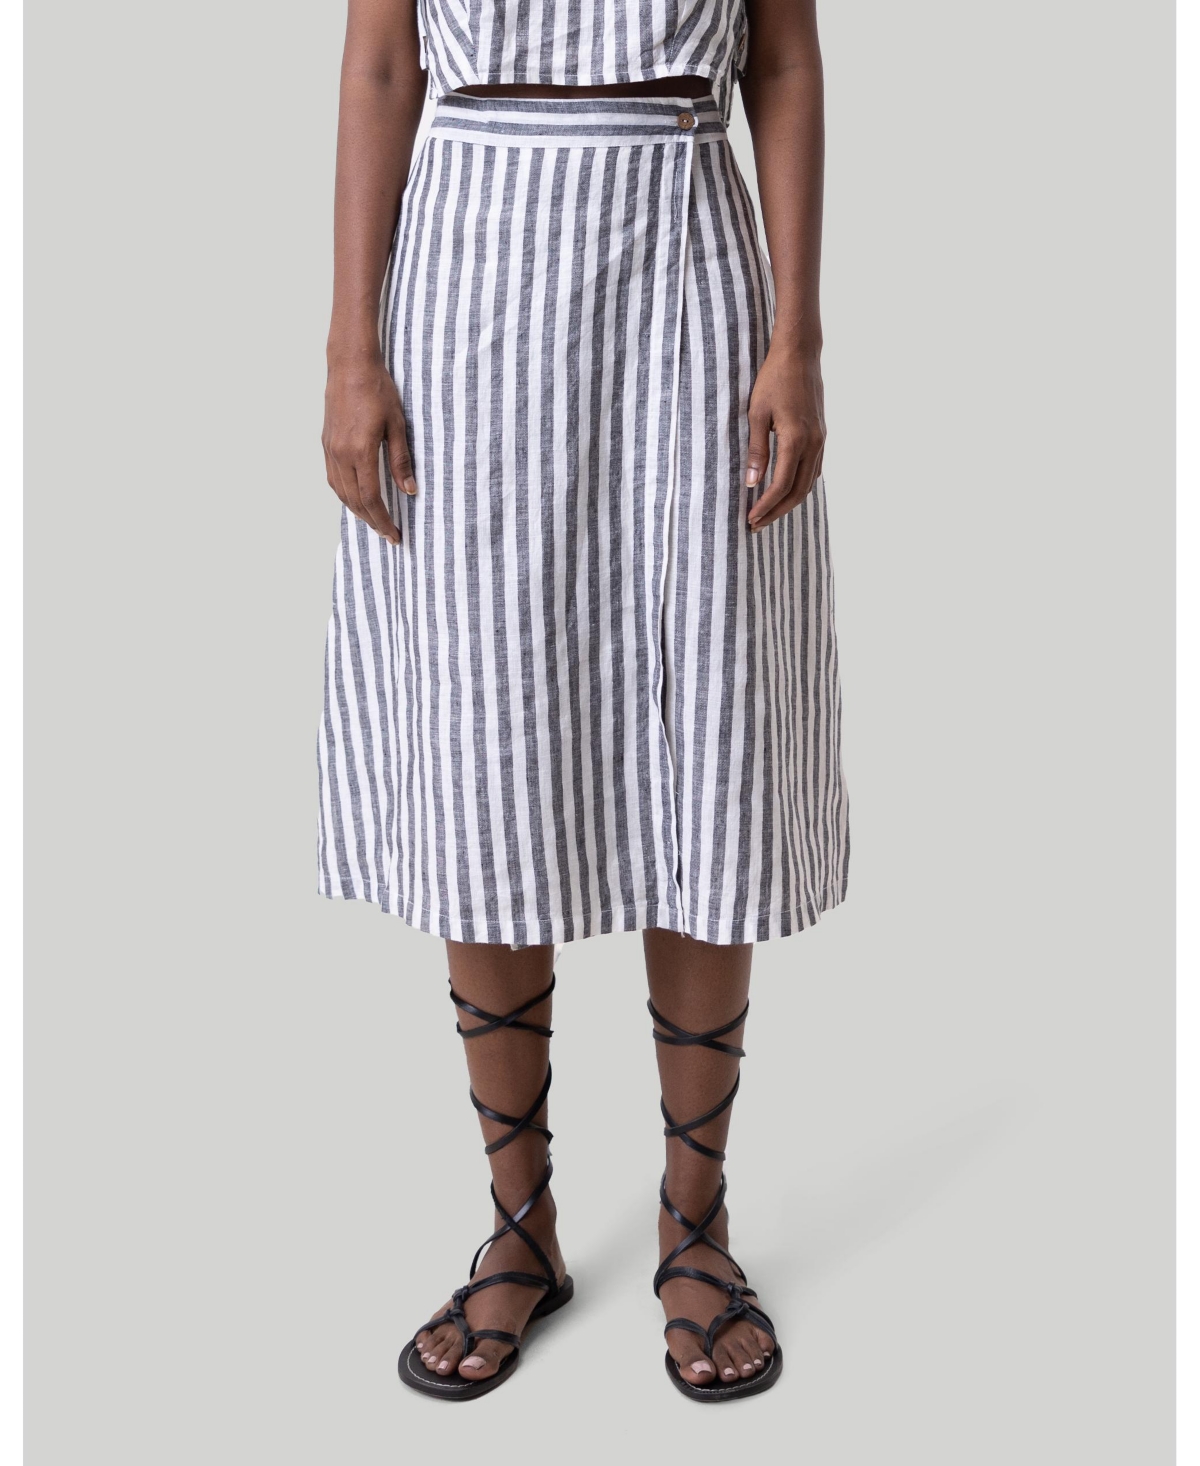 Women's Overlap Midi Skirt - Linen stripes